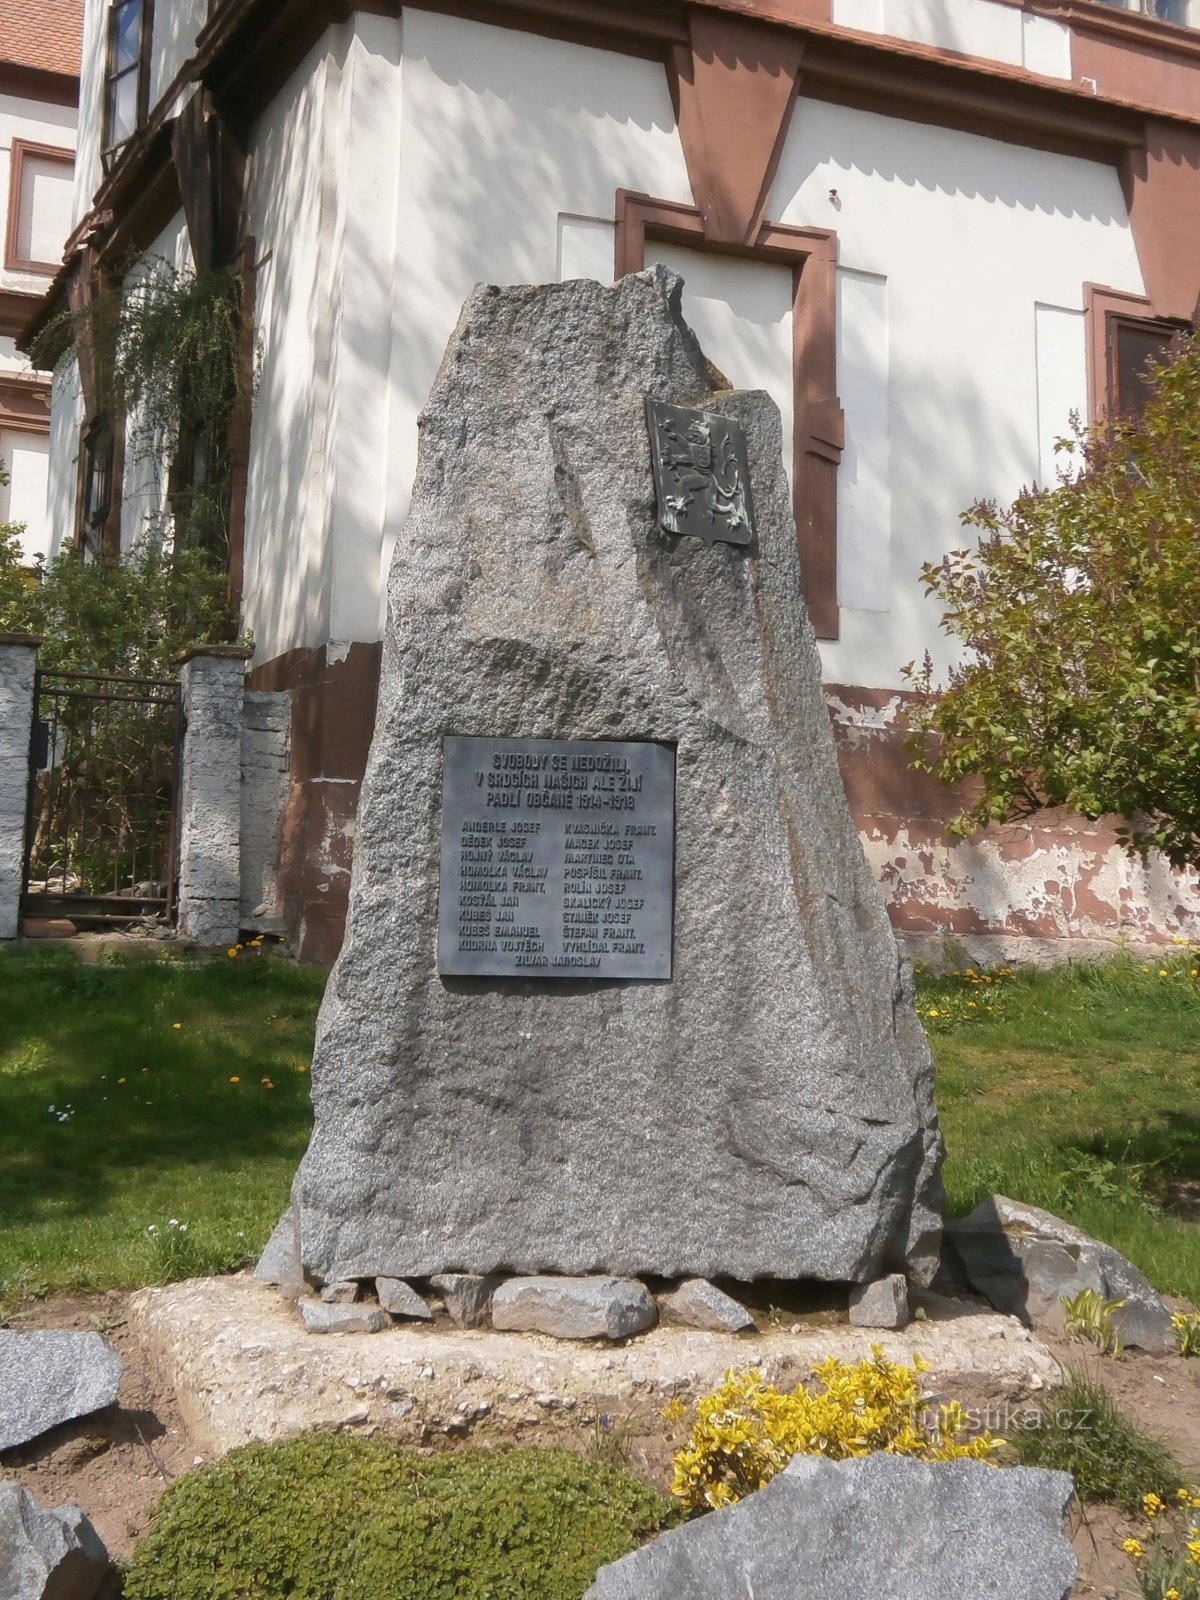 Ensimmäisessä maailmansodassa kaatuneiden muistomerkki (Hořiněves)